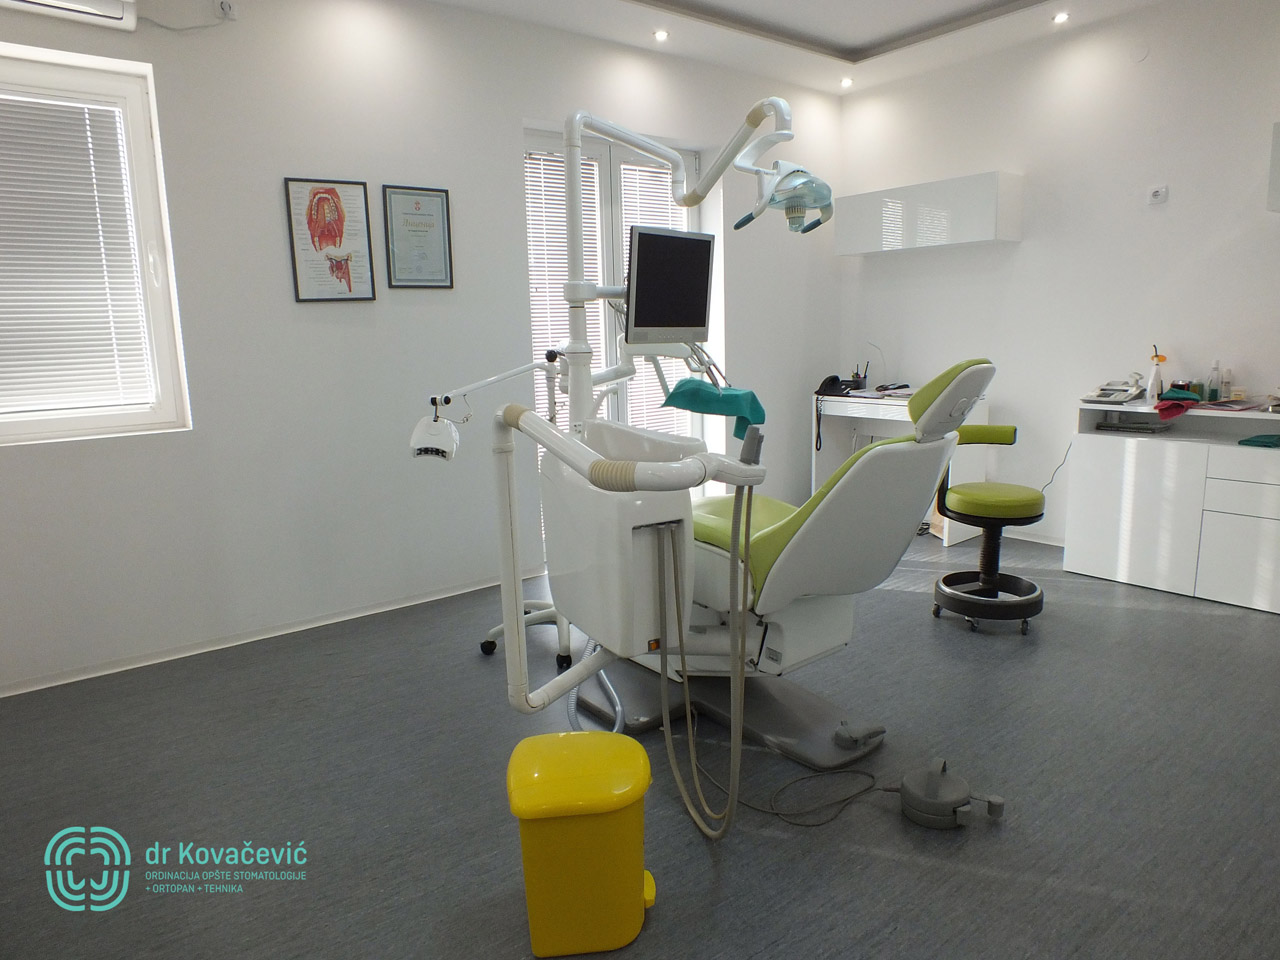 DENTAL CLINIC AND X-RAY CENTER DR KOVACEVIC Dental surgery Belgrade - Photo 2